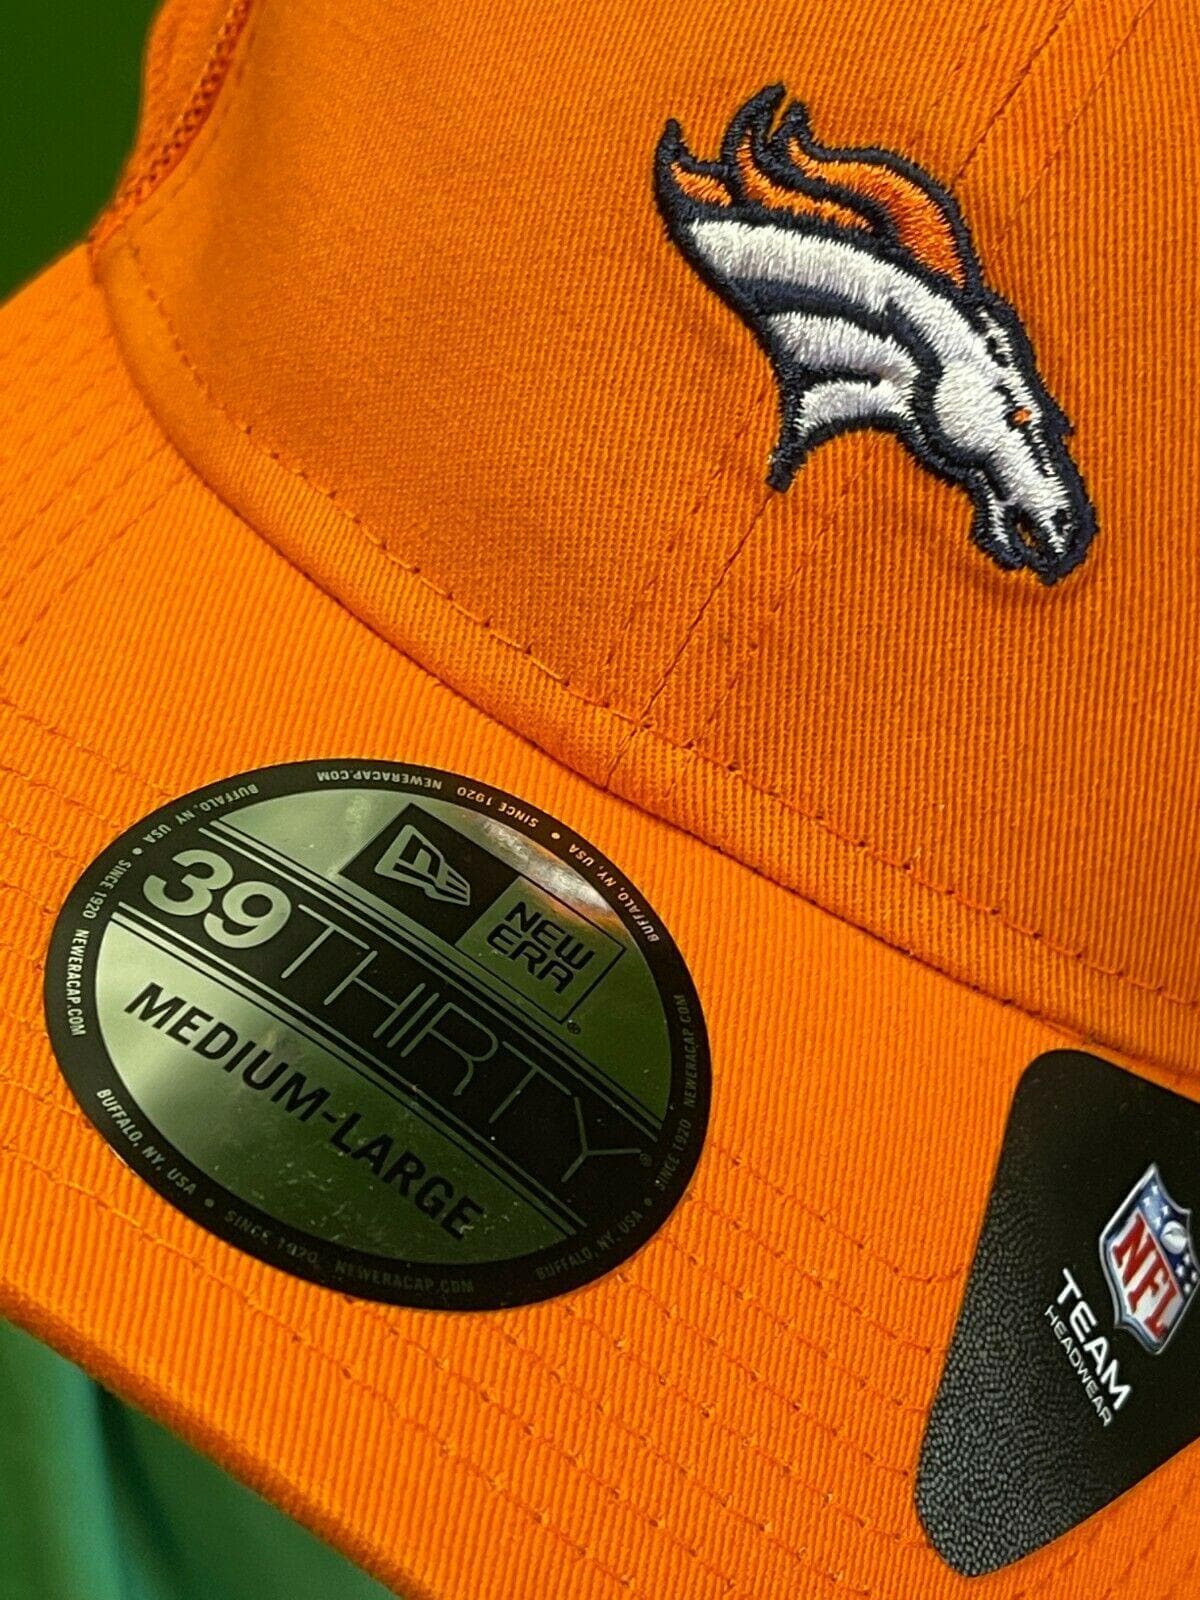 NFL Denver Broncos New Era 39THIRTY Team Precision Cap Hat M-L NWT